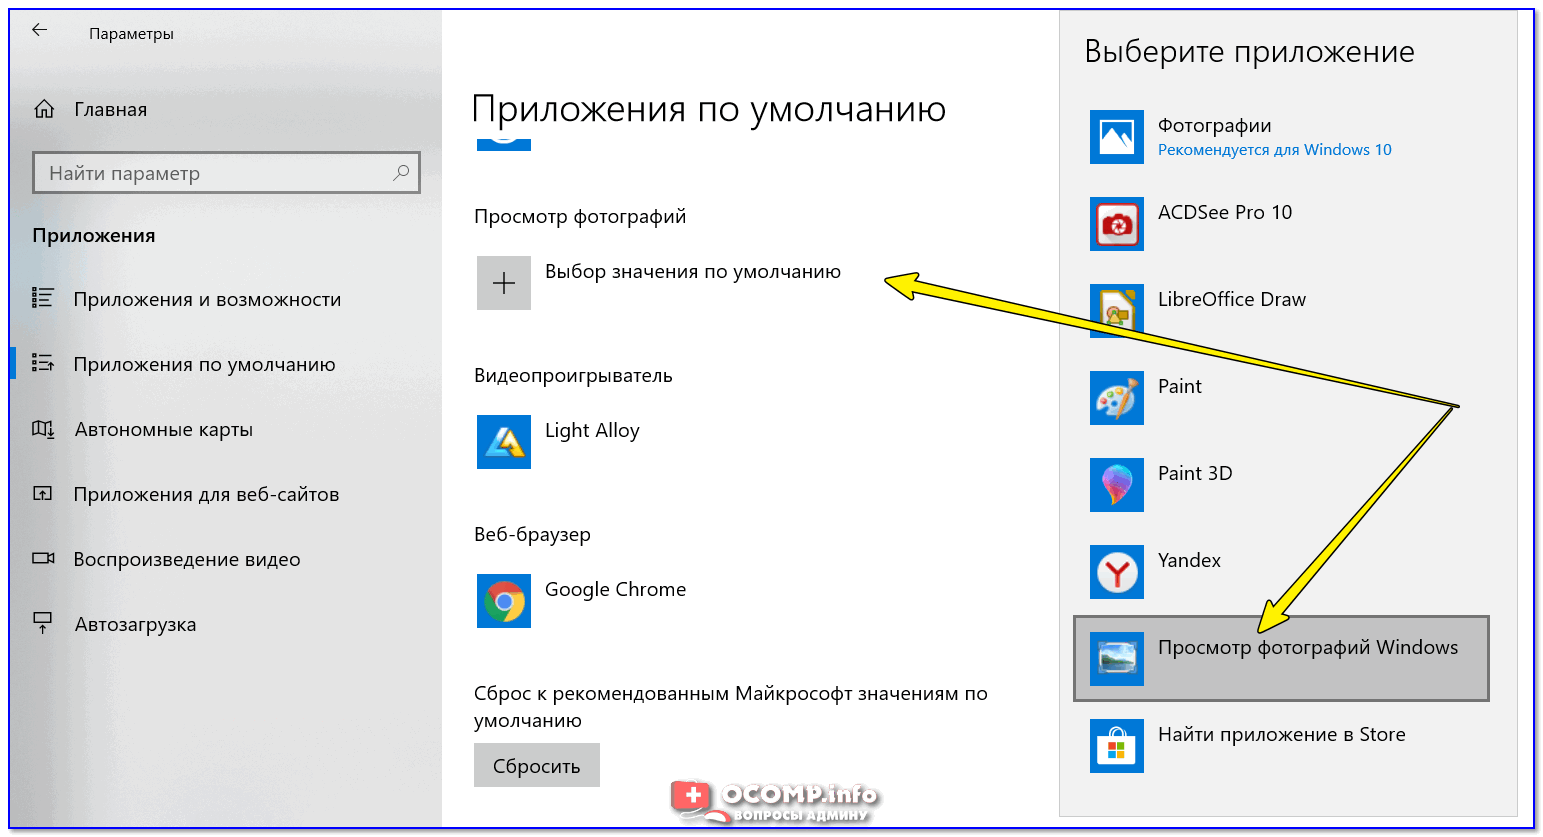 В Windows 10 можно будет восстановить Просмотр фотографий Windows для открытия изображений с помощью старого средства просмотра Windows